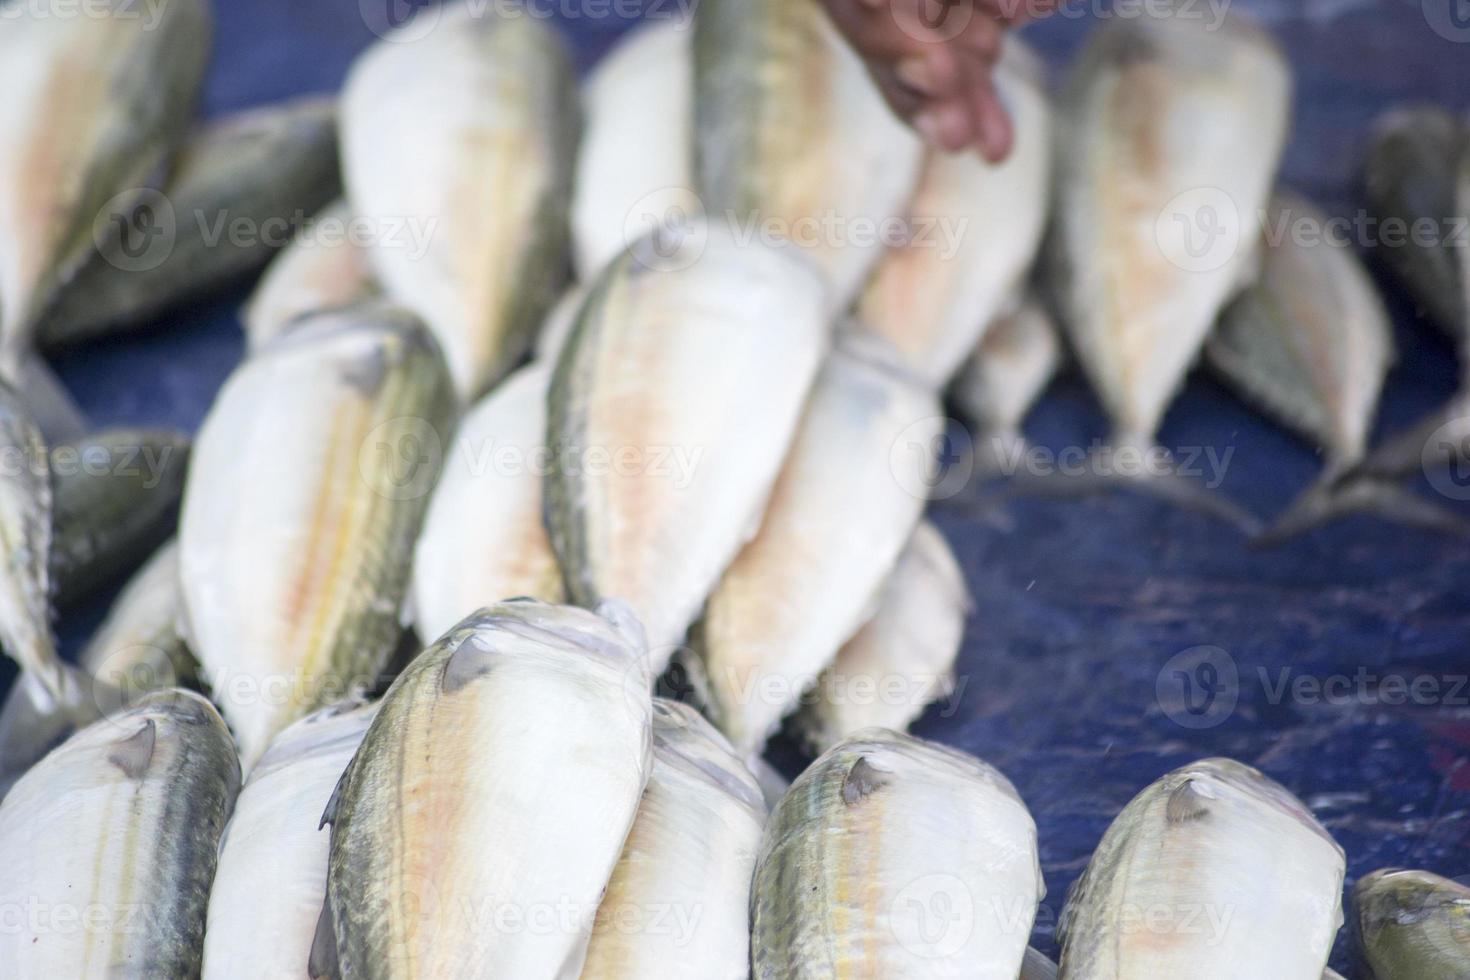 la variedad de mariscos que se venden en el mercado de pescado foto